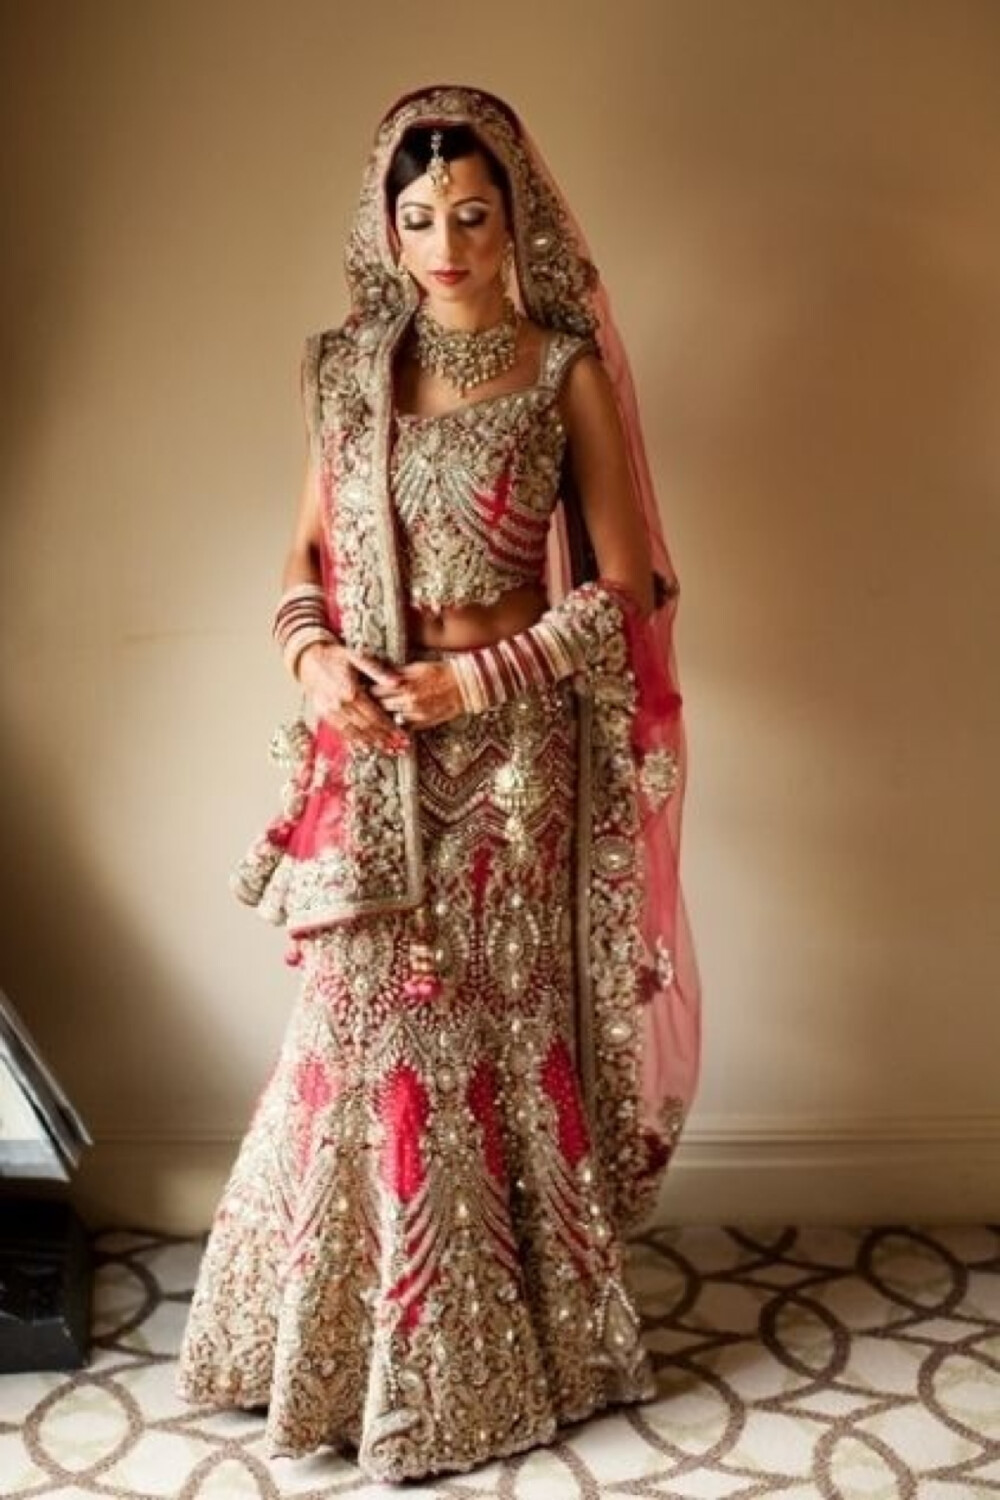 印度新娘,印度美女,印度服饰